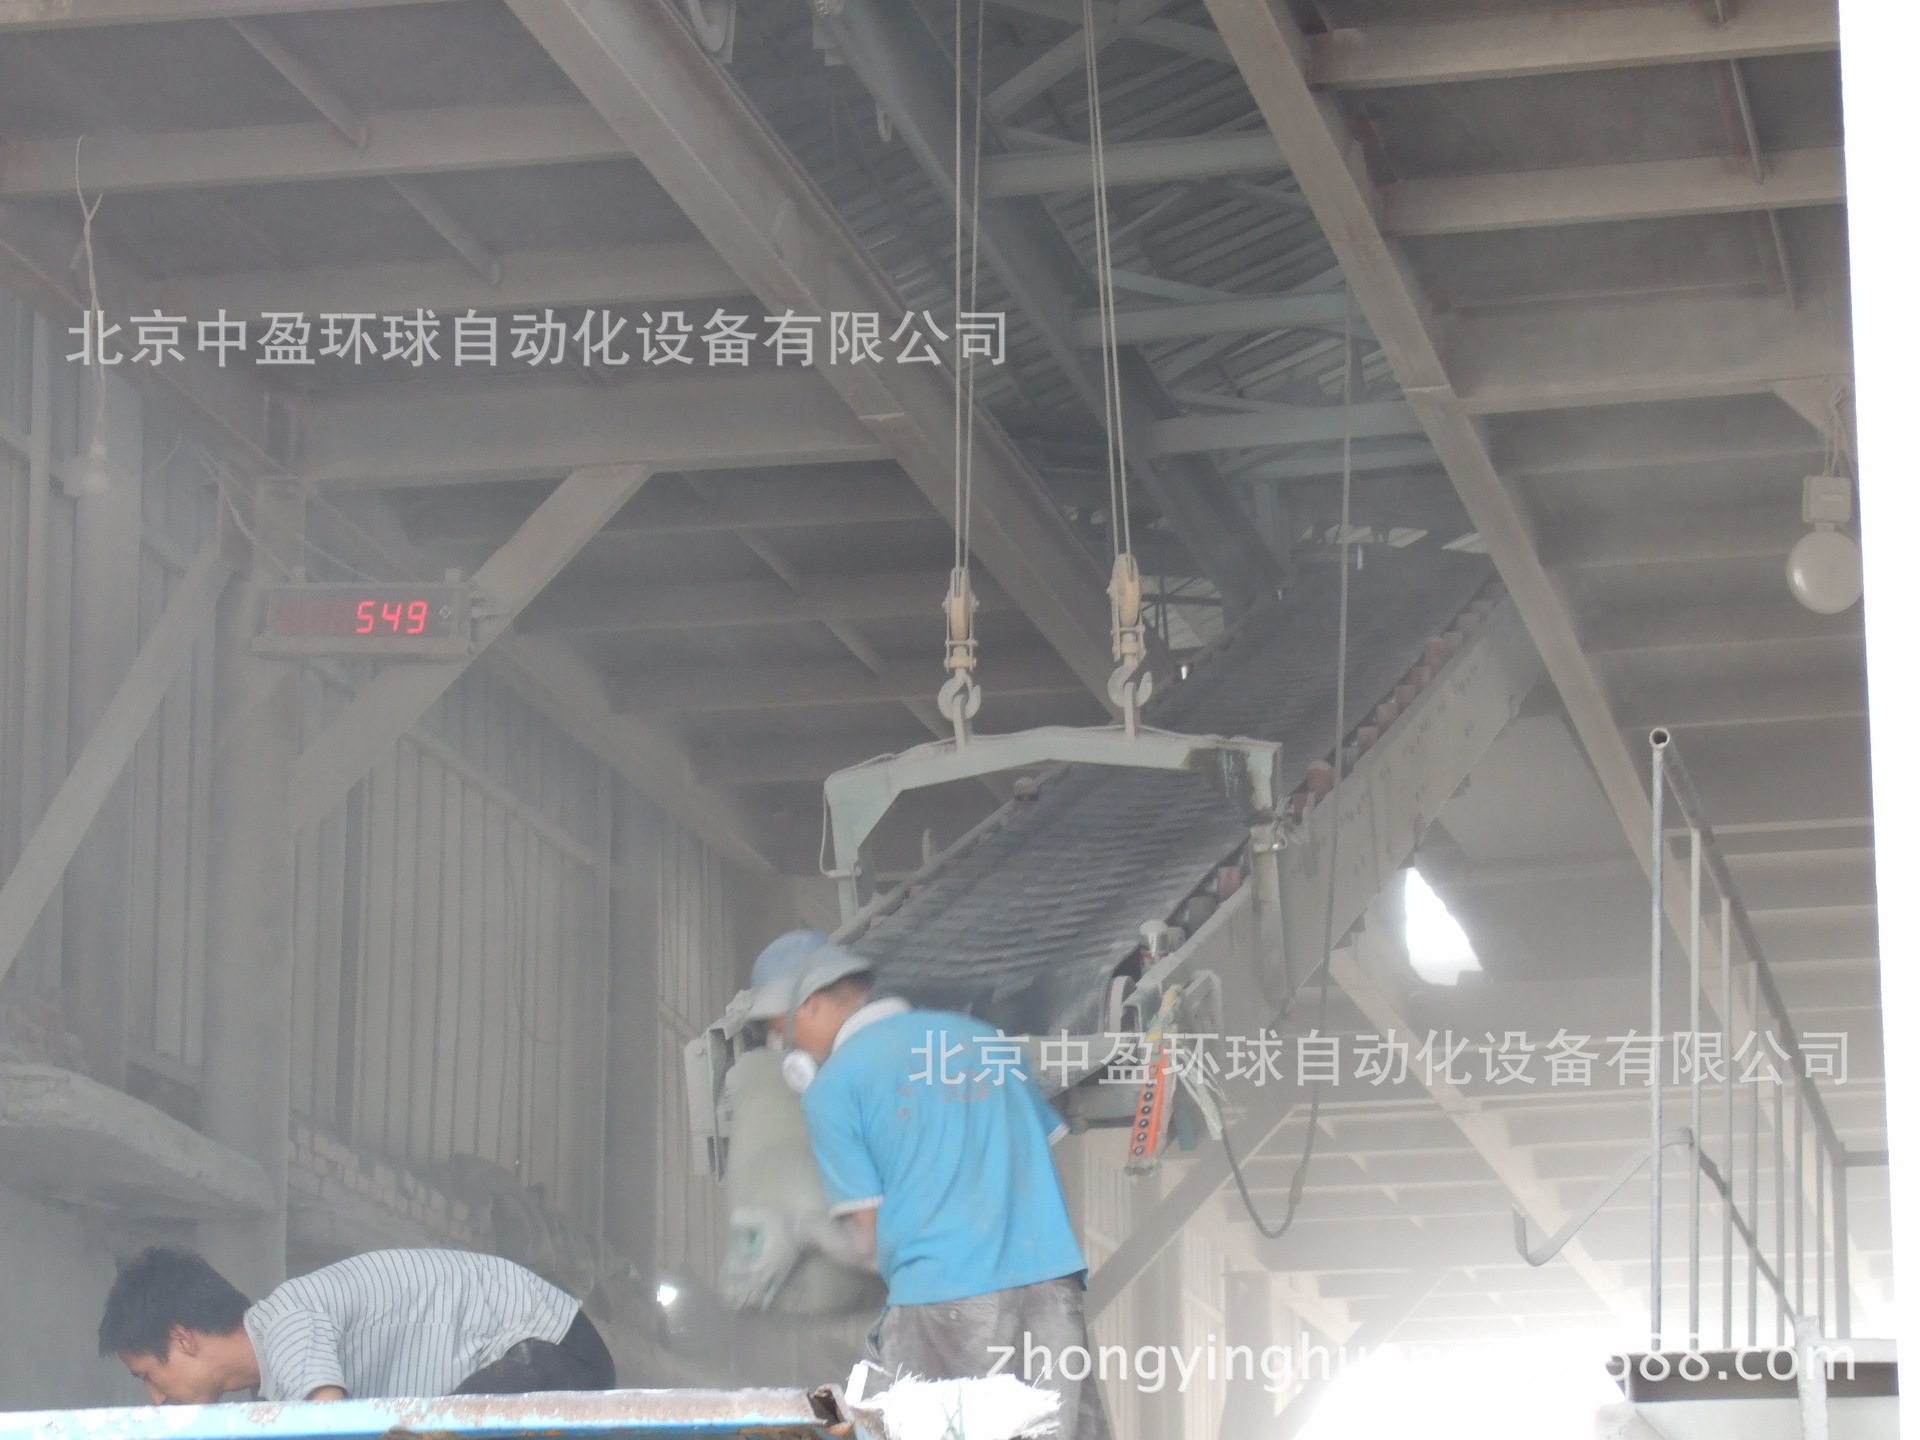 水泥生产线计数管理系统应用于唐山冀东水泥